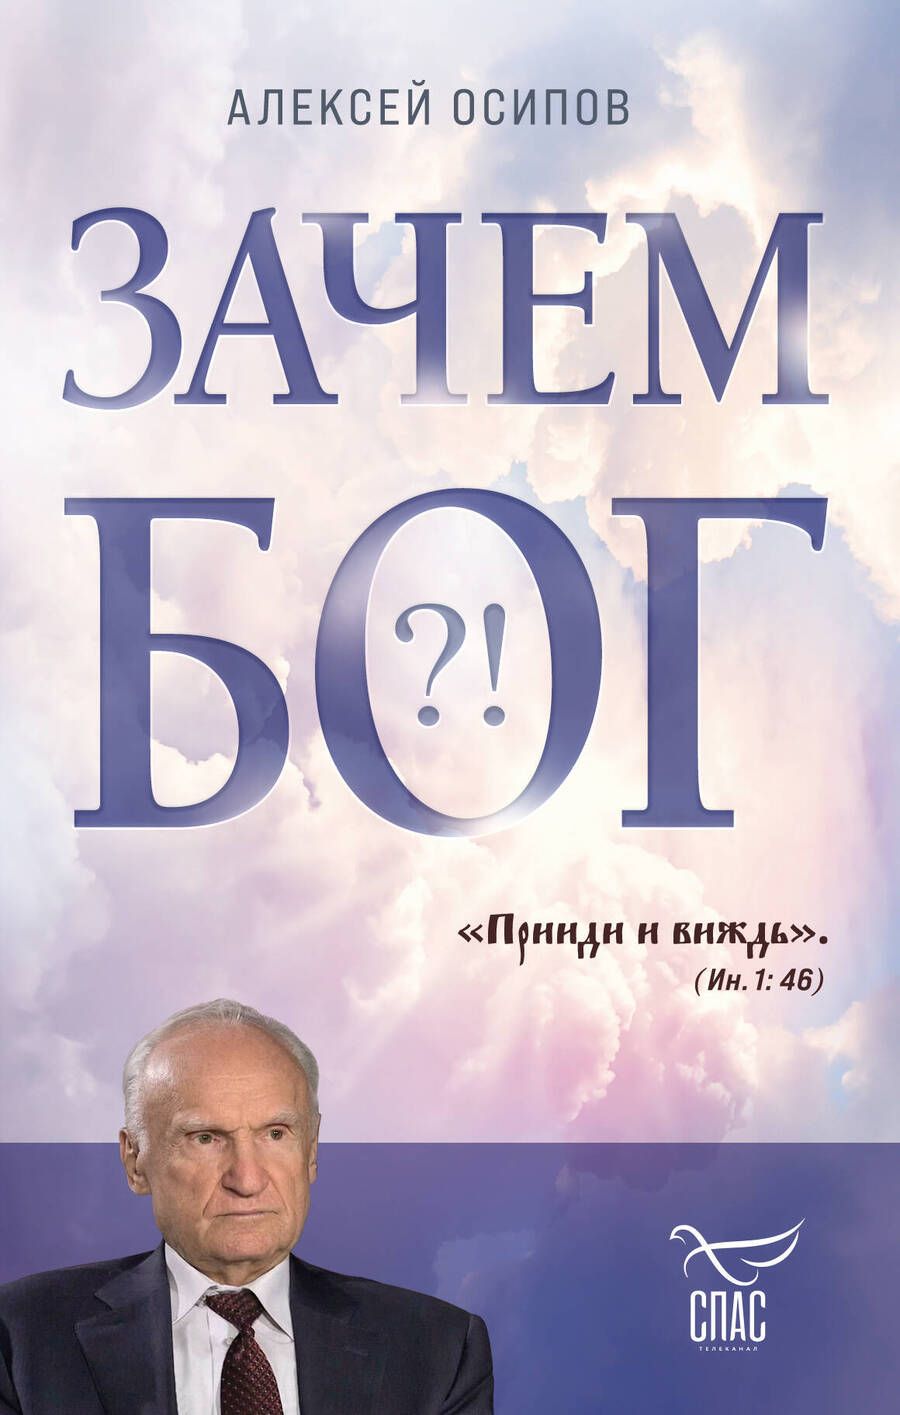 Обложка книги "Осипов: Зачем Бог"